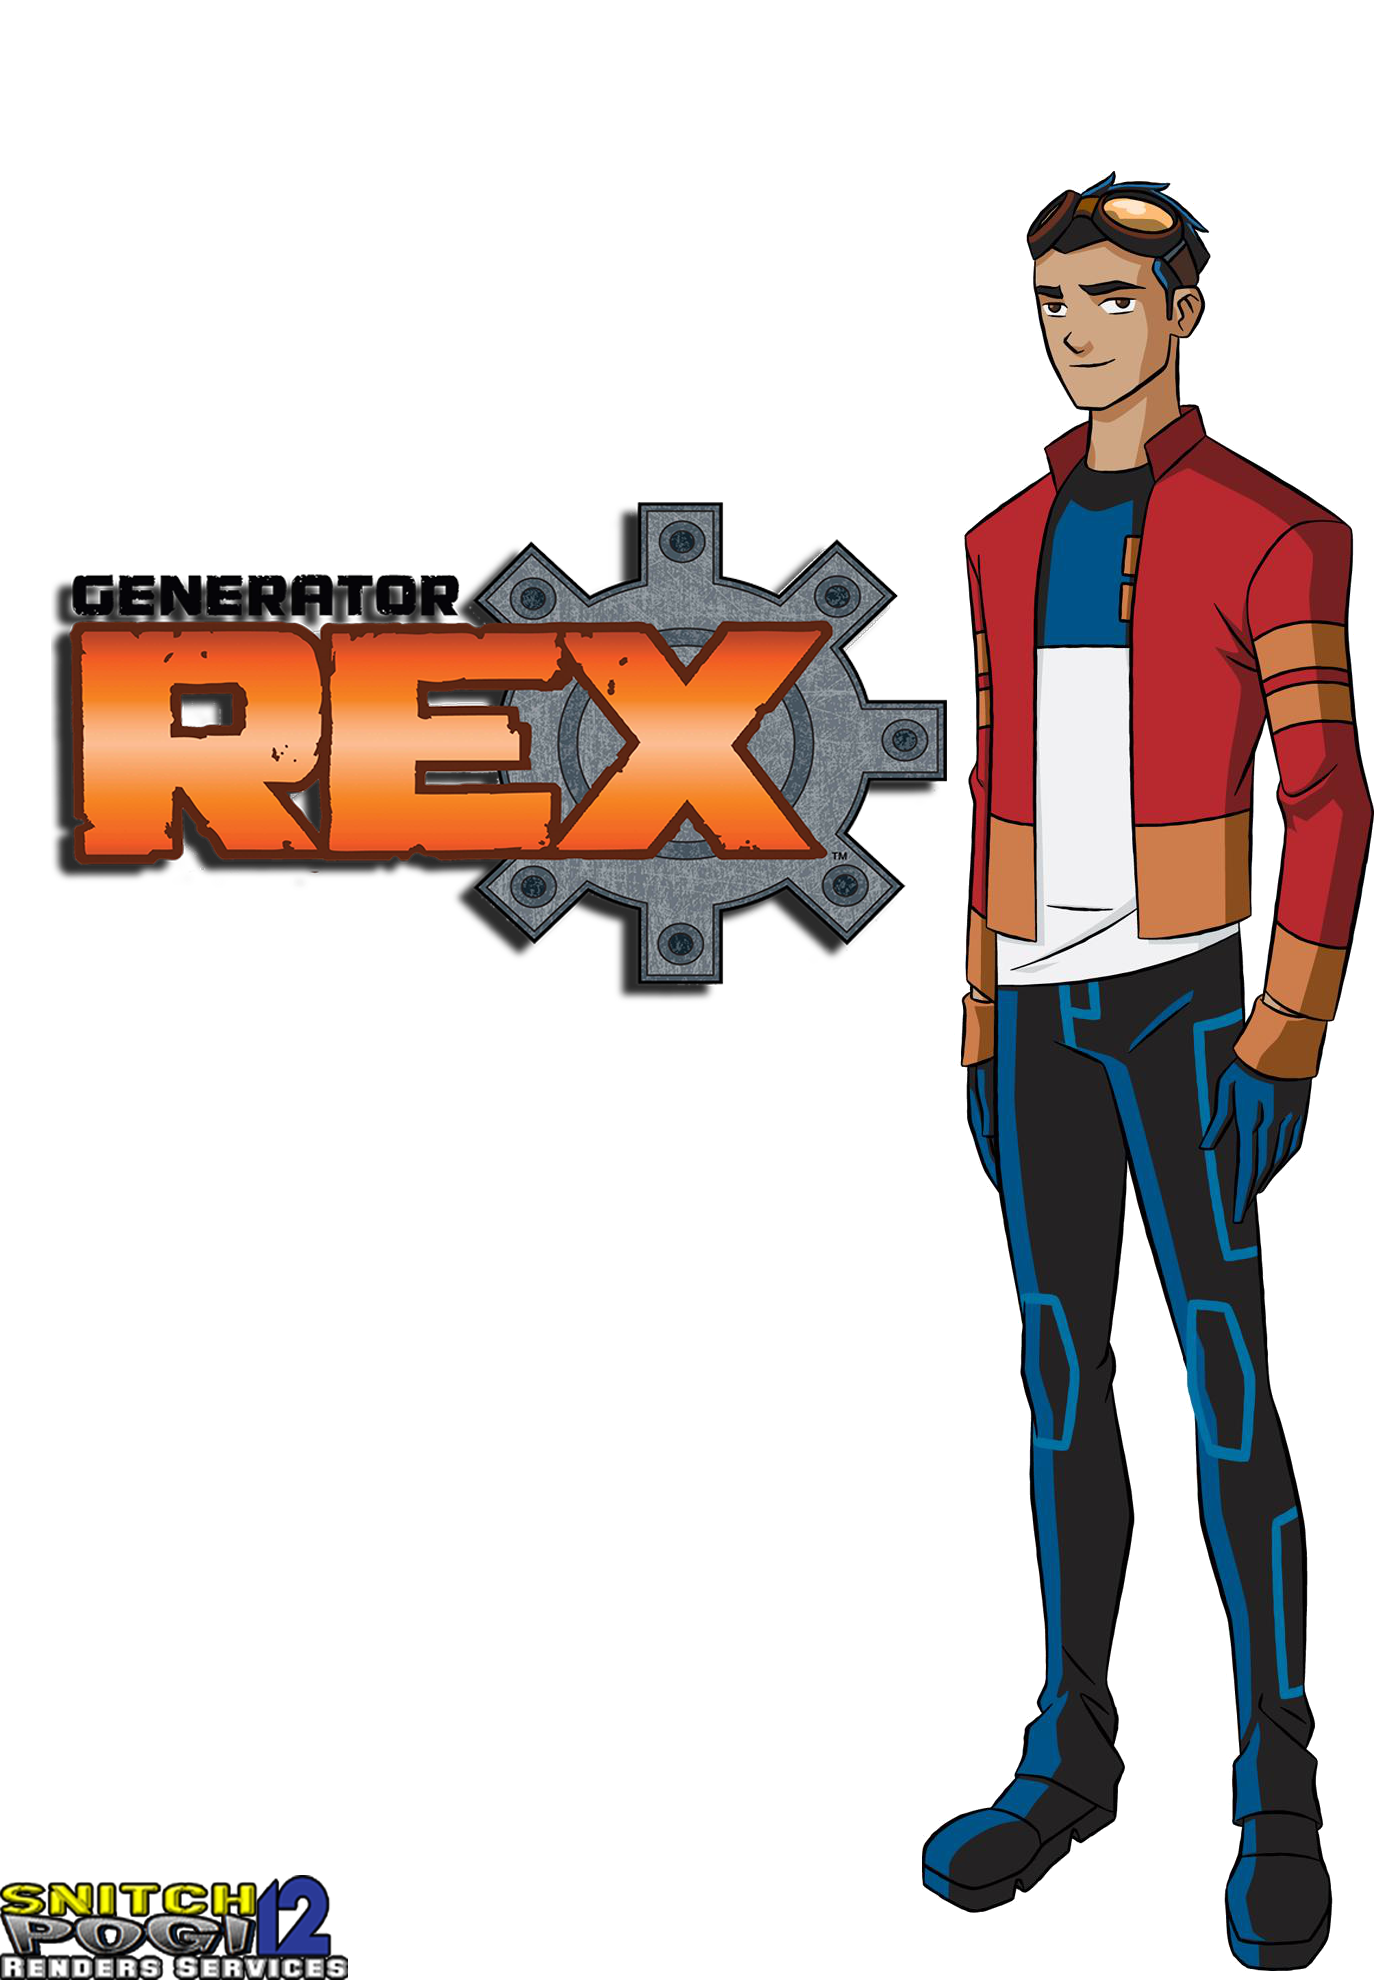 Rex Salazar, Cartoon Network Wiki